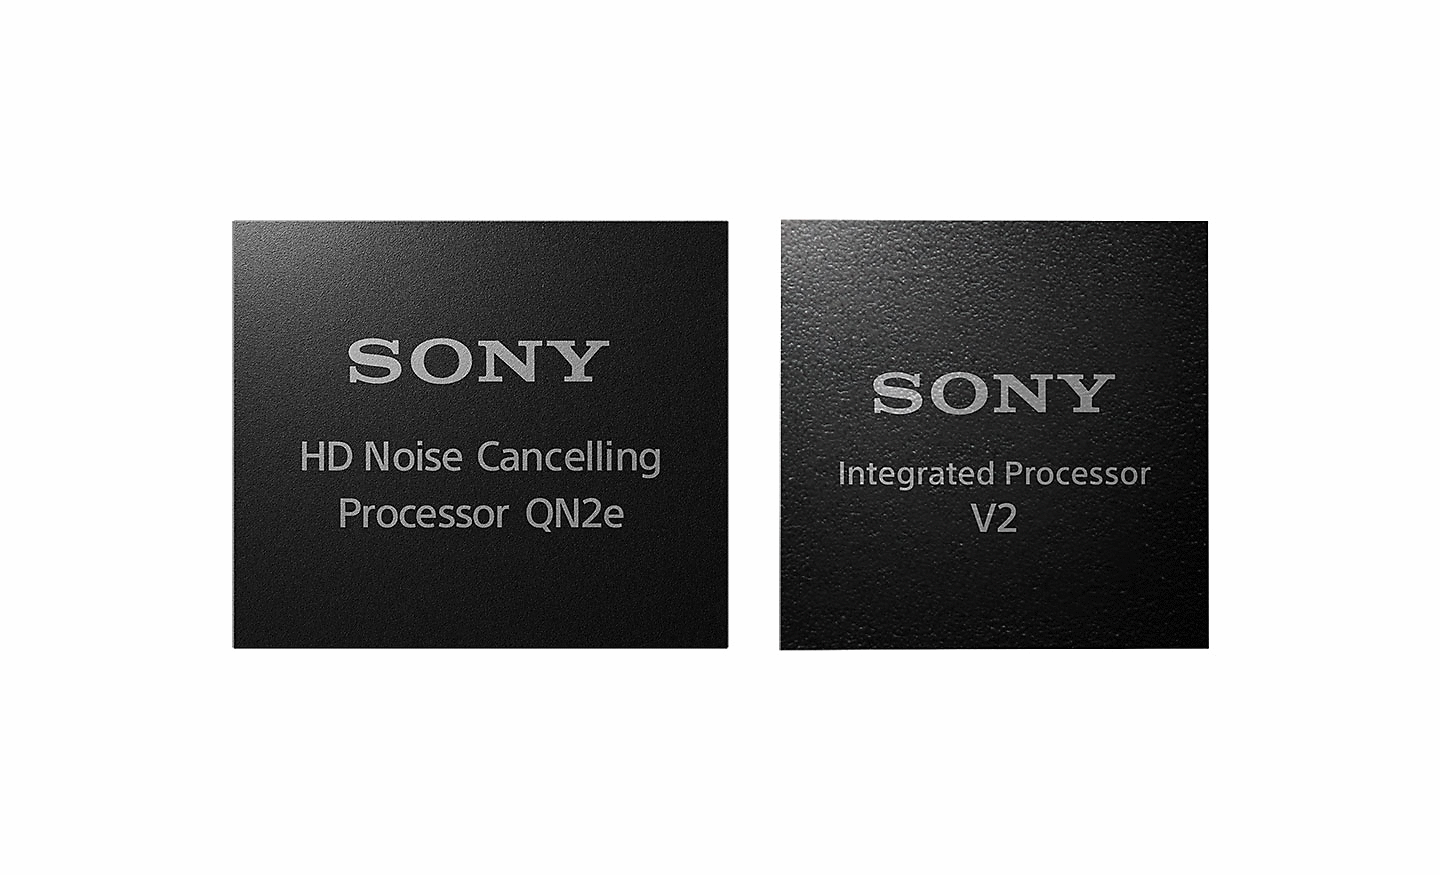 Slika dvaju procesora, lijevo je HD procesor za blokadu buke, a desno integrirani procesor V2